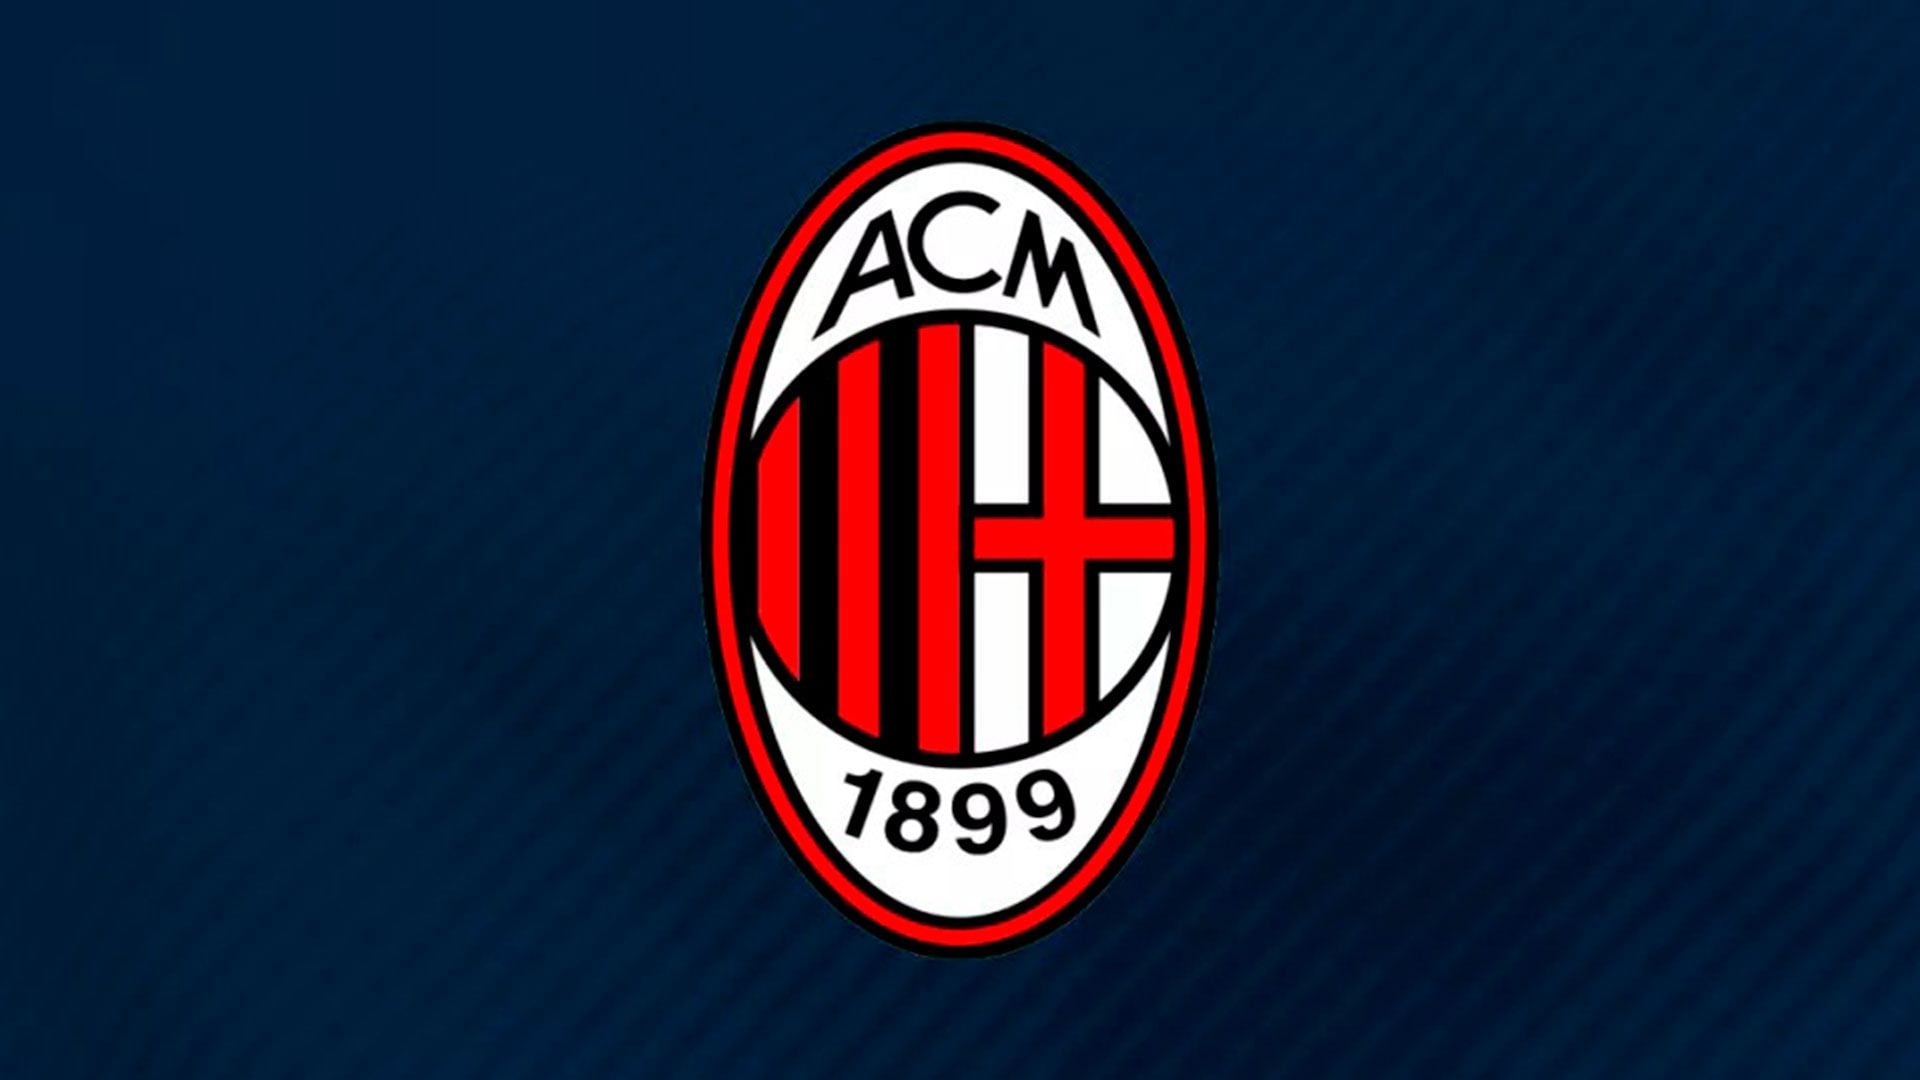 AC Milan completa el podio de los mejores escudos del mundo